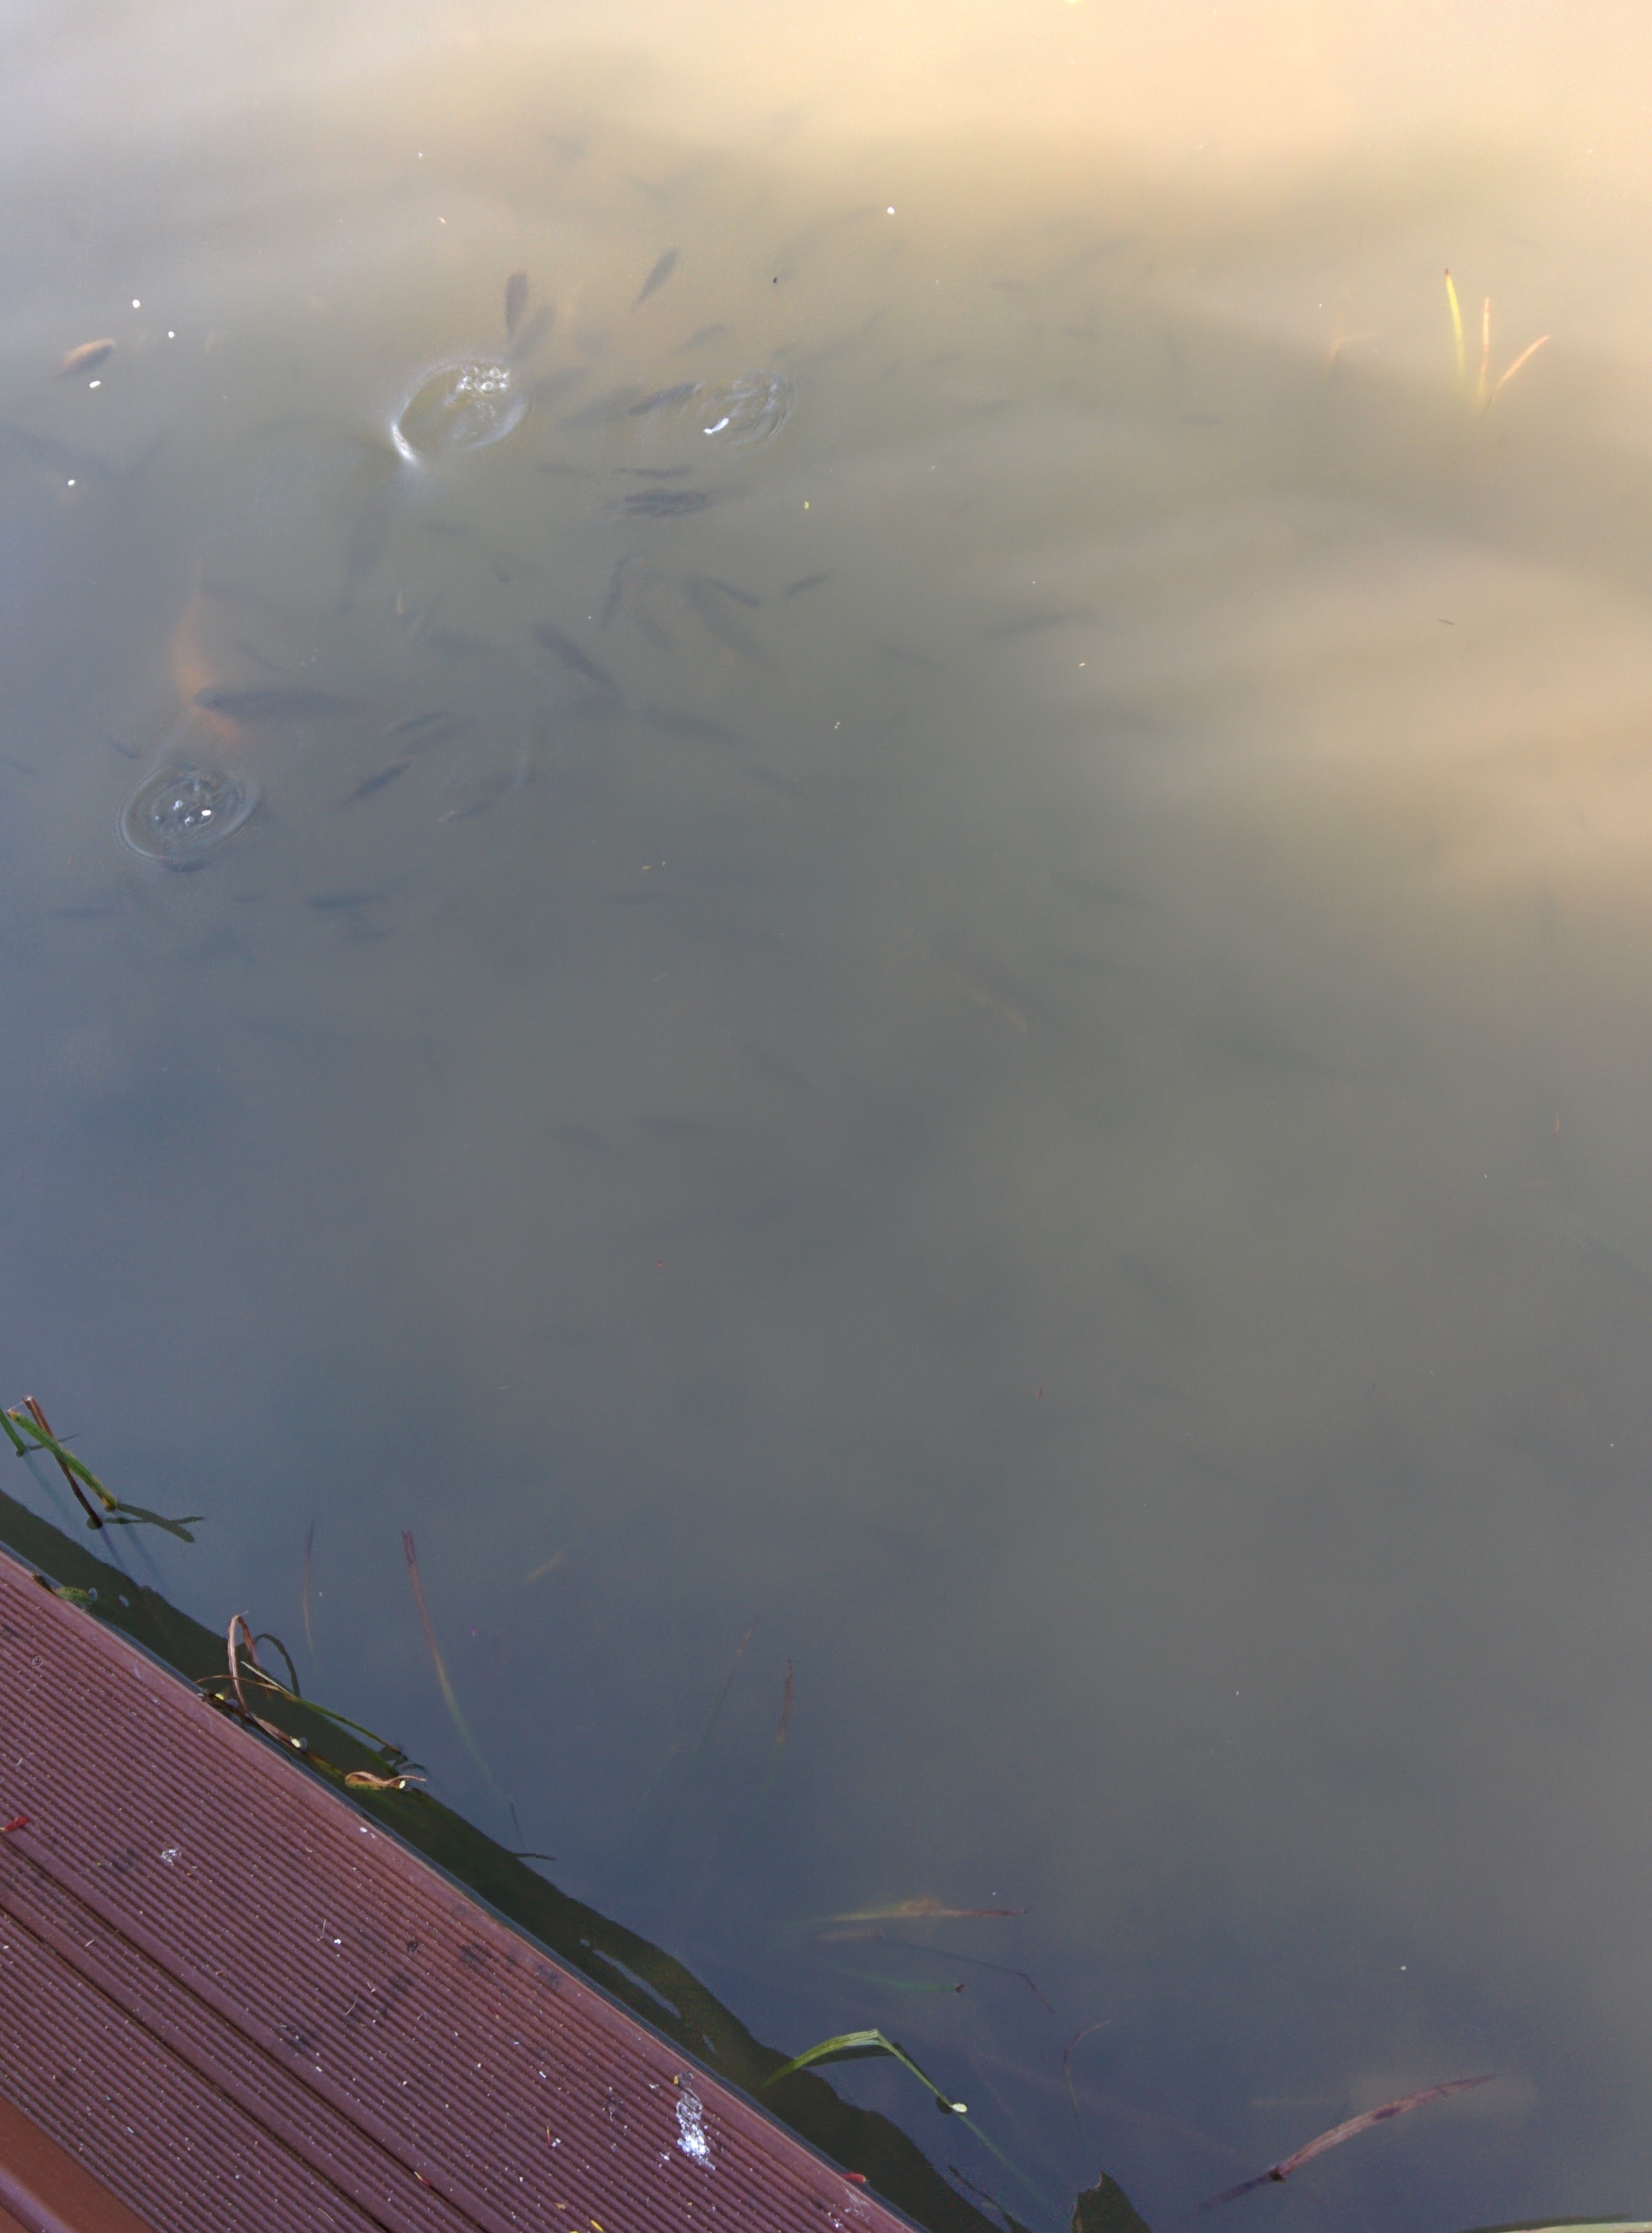 IMG_20151025_145516.jpg 유림공원 반도지에 사는 물고기 떼... 비단잉어, 금붕어, 붕어